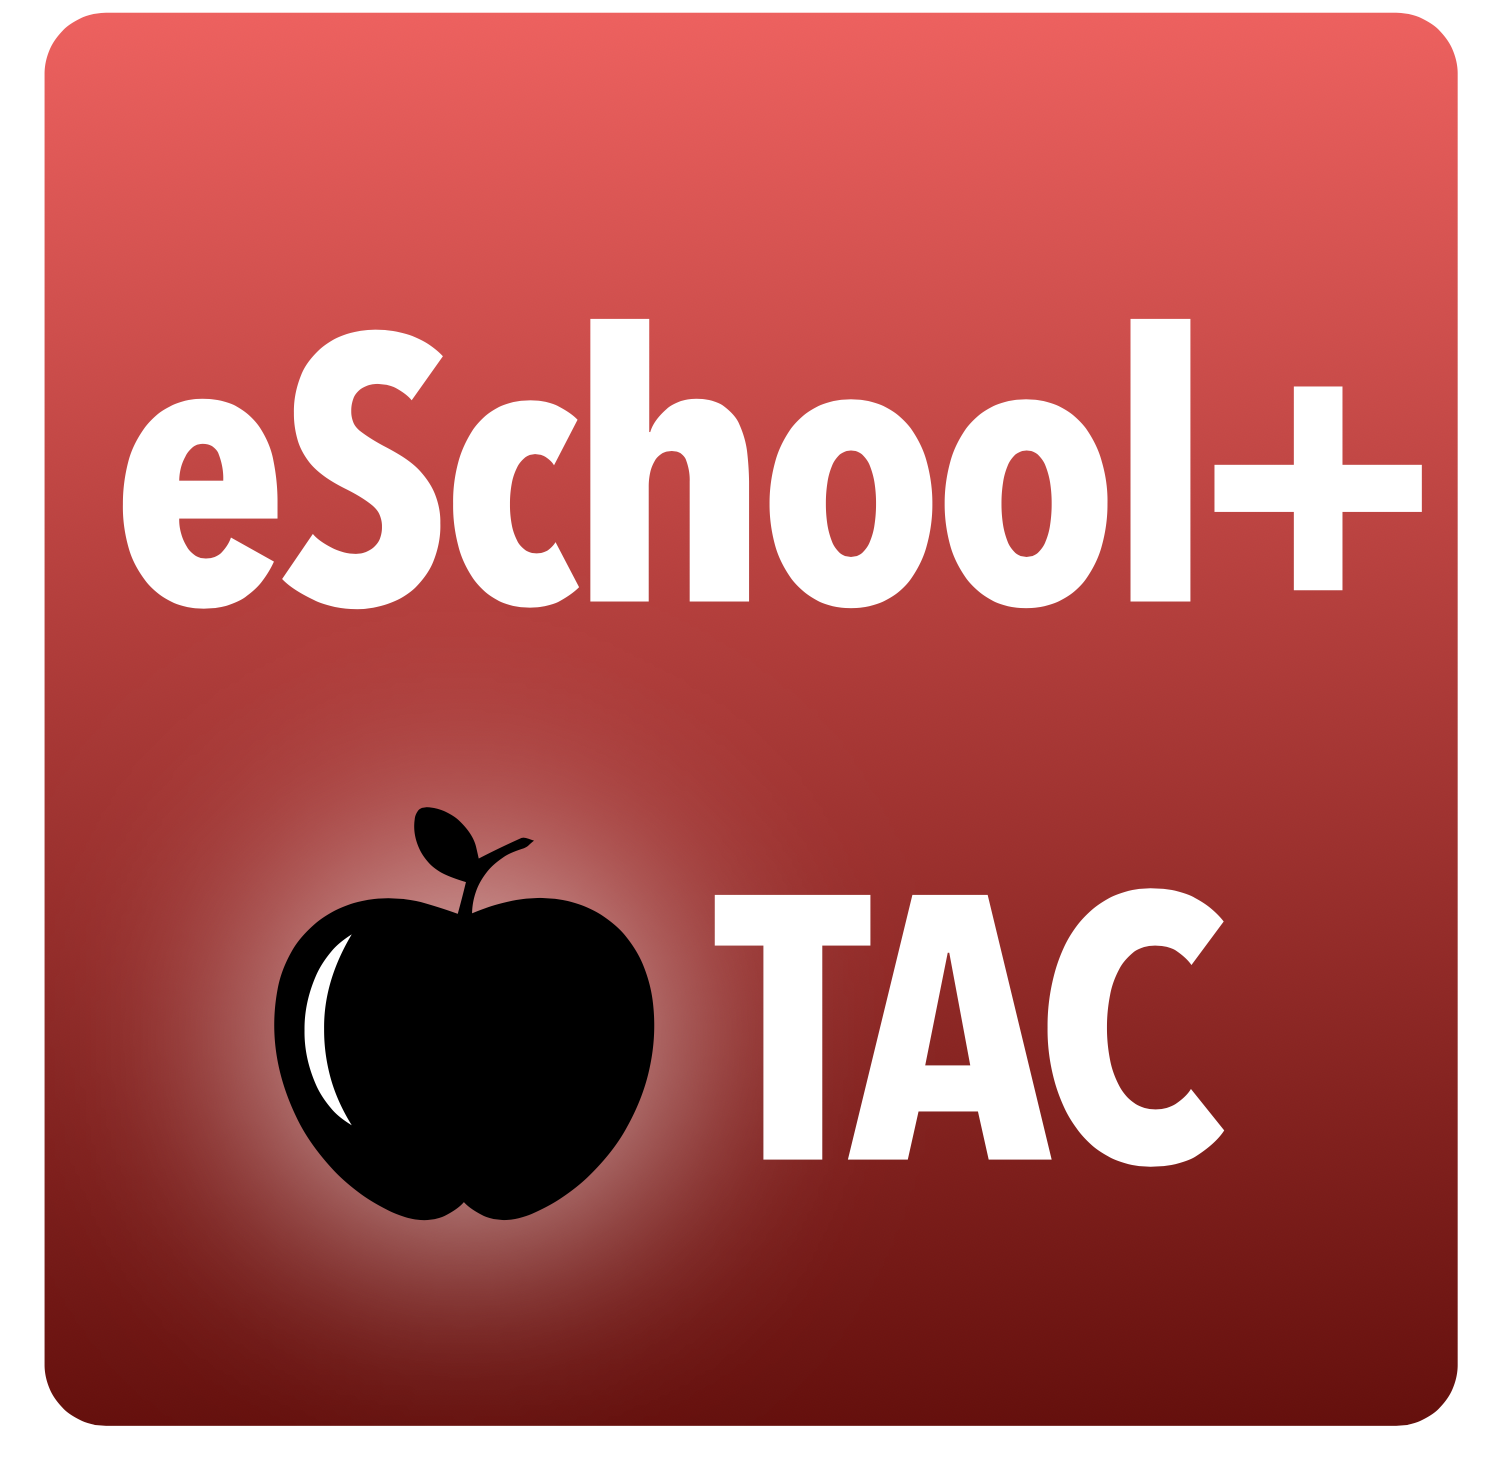 eSchool+ TAC